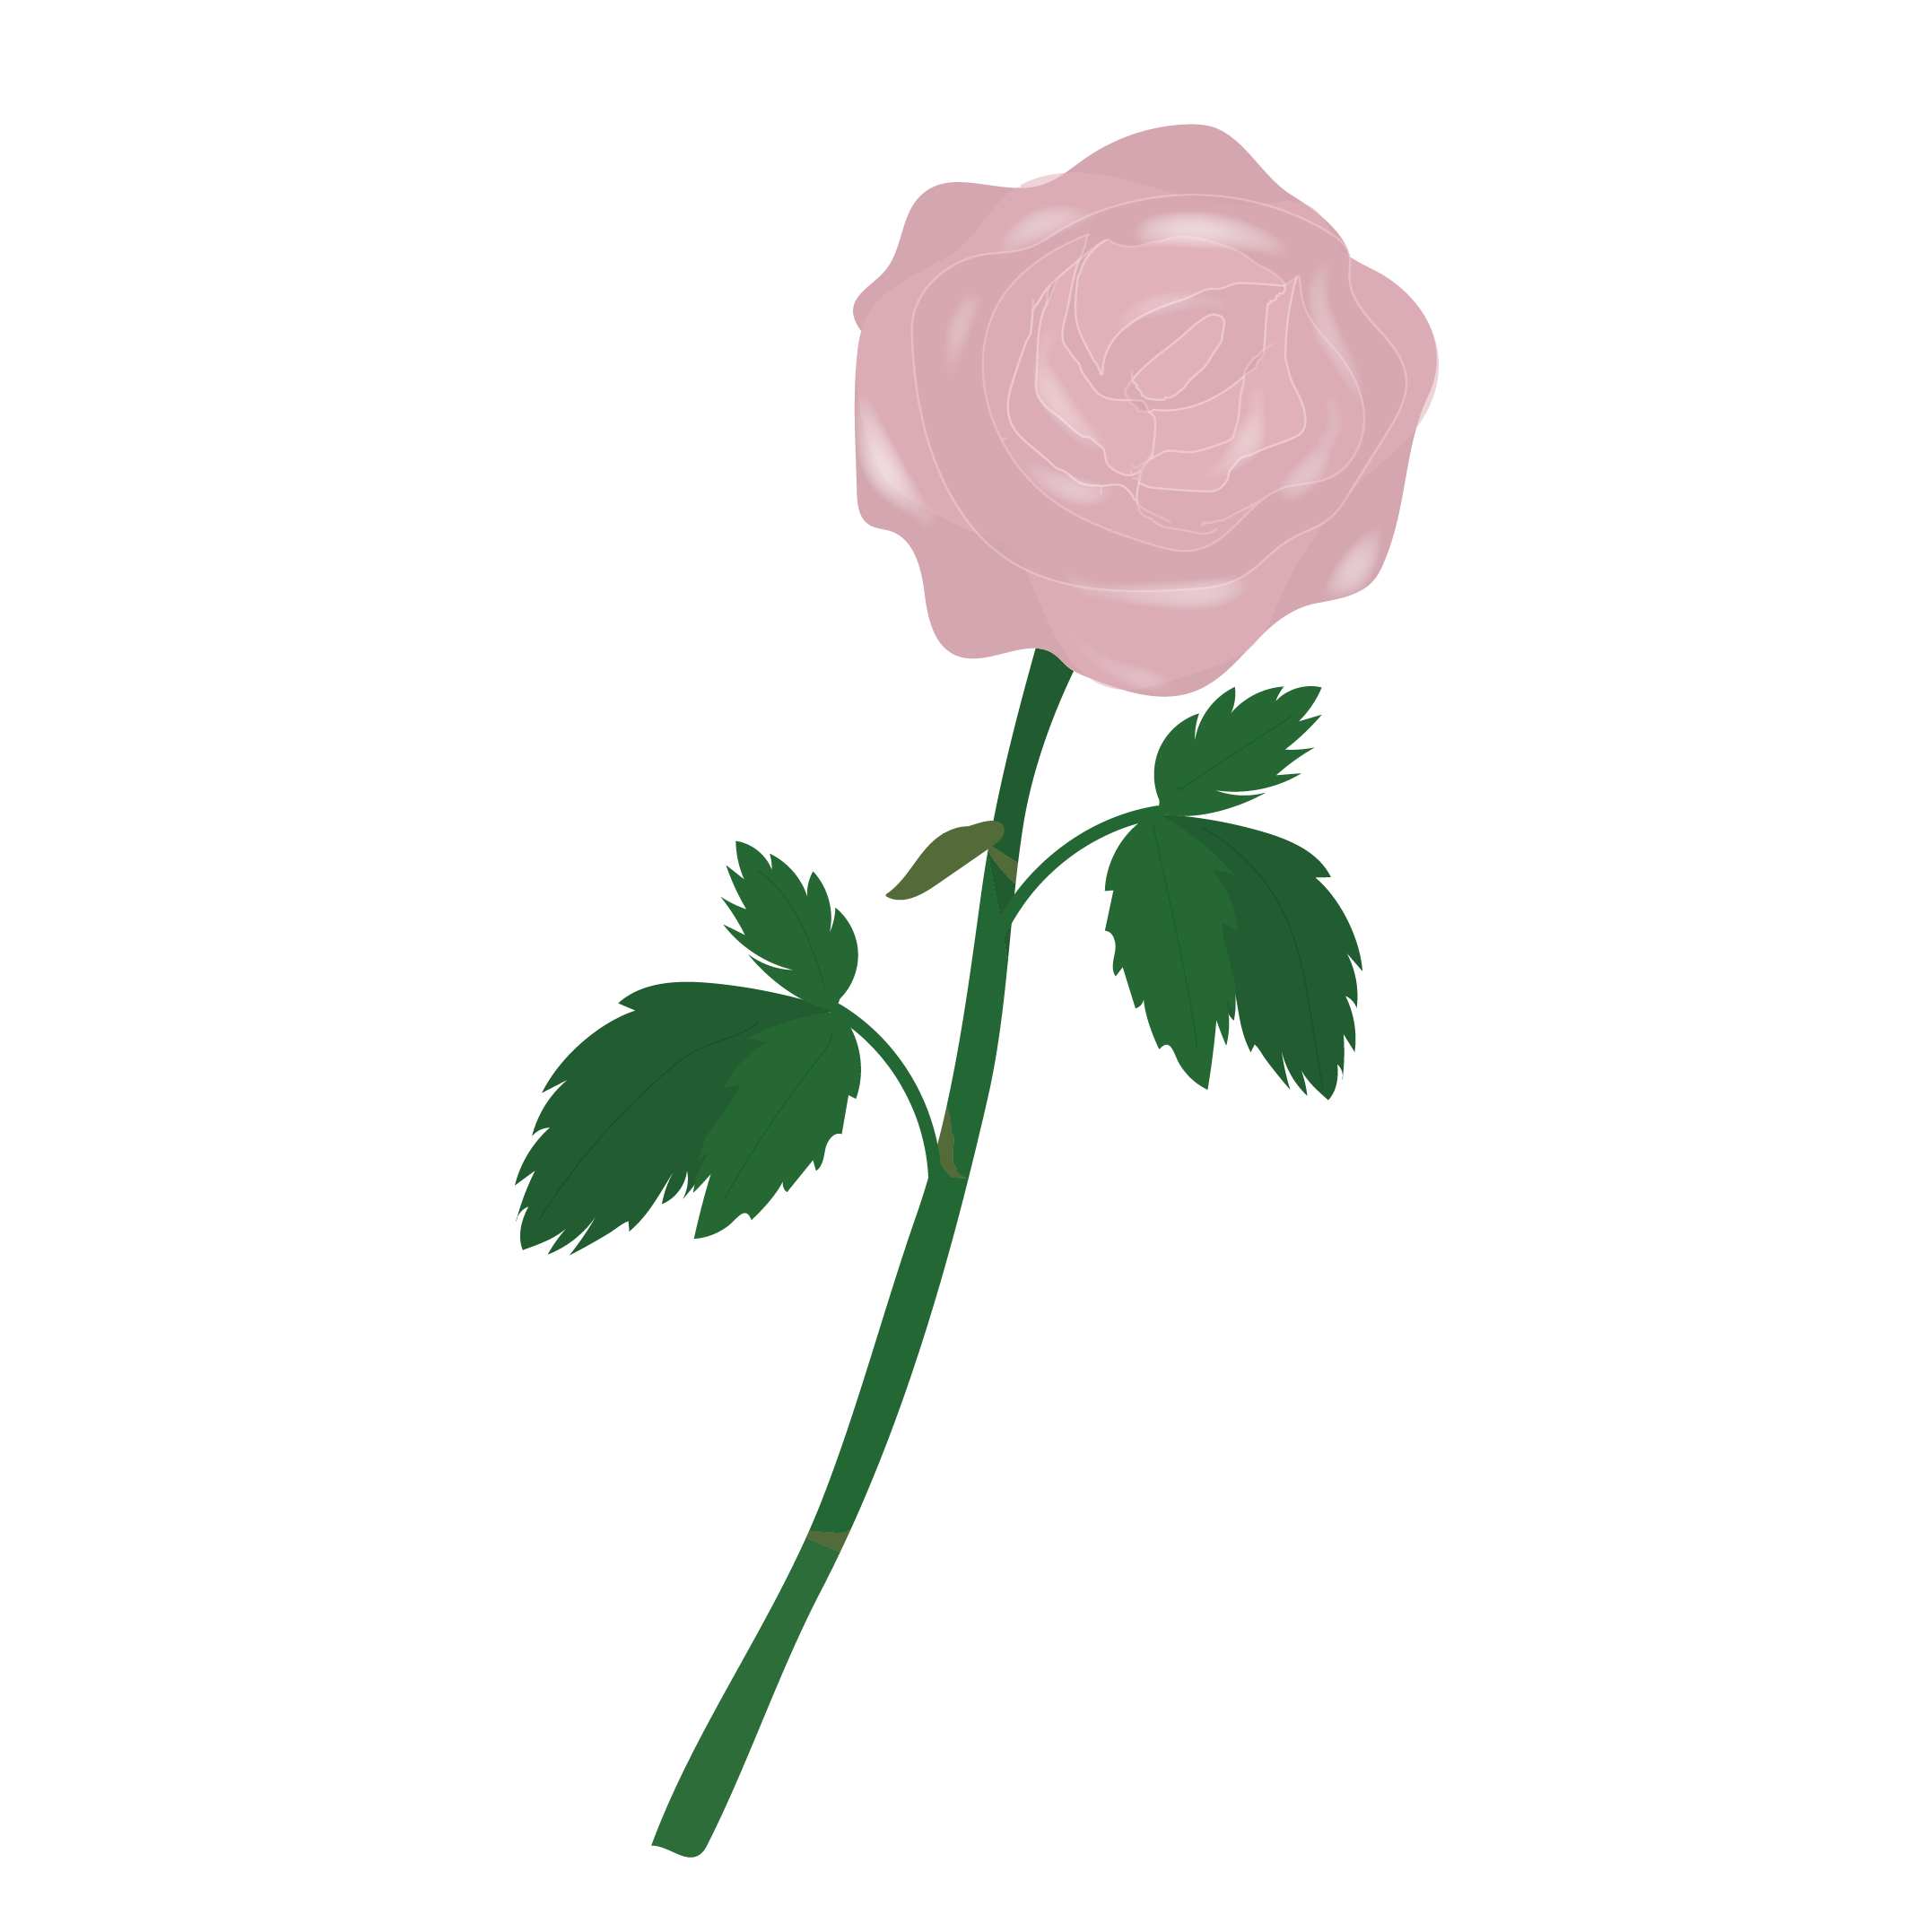 一輪のピンクの薔薇 バラ の フリー イラスト 商用フリー 無料 のイラスト素材なら イラストマンション